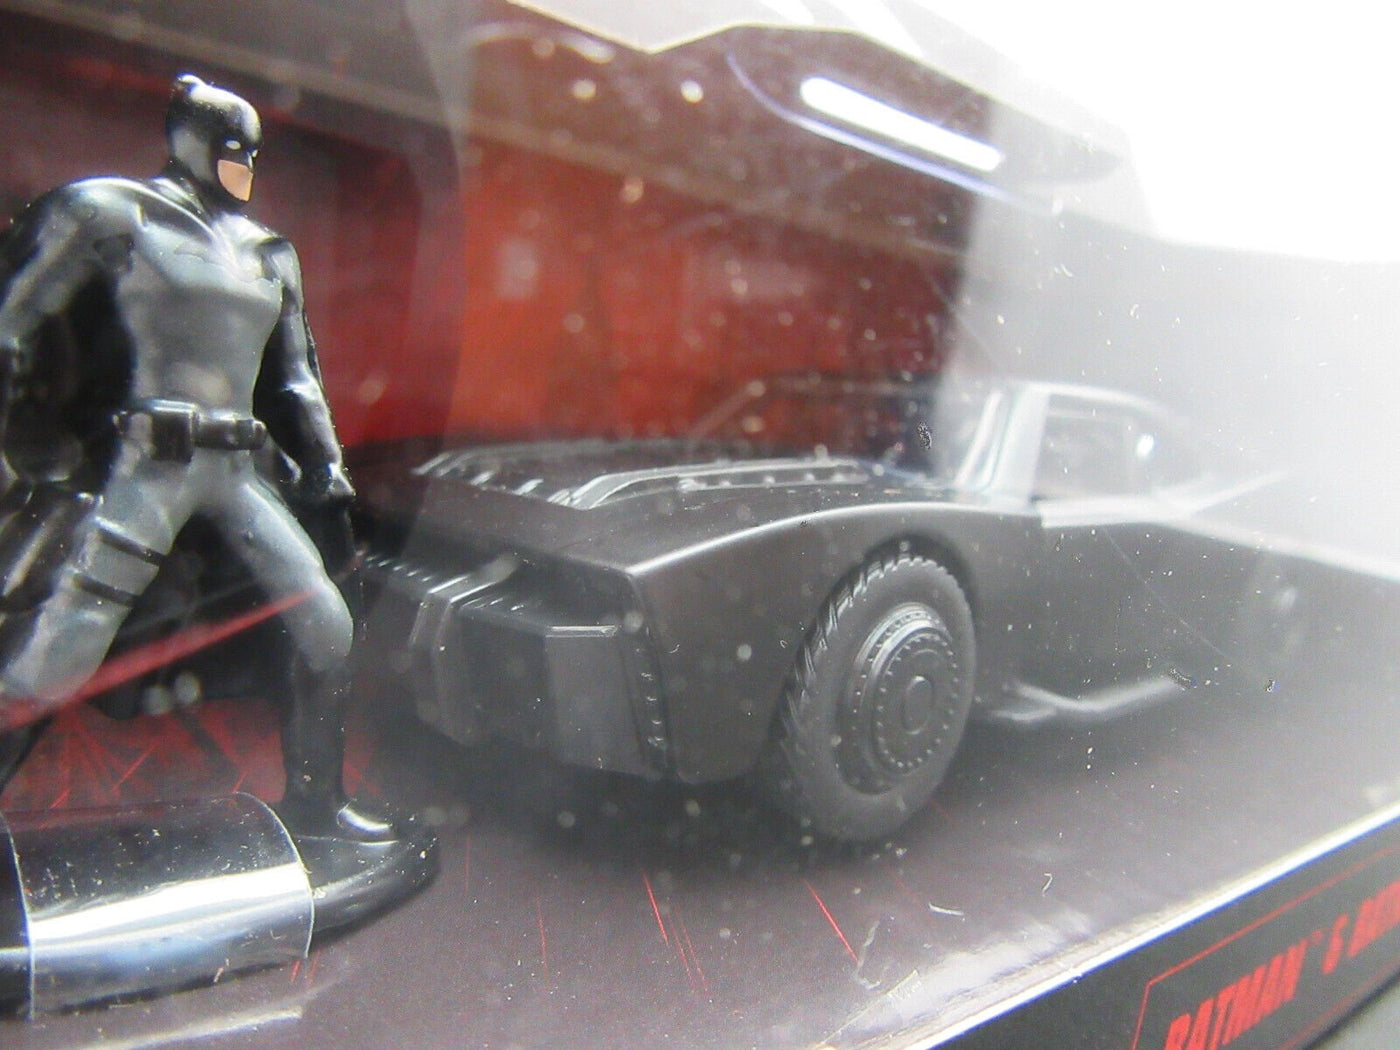 The Batman Batmobile & Batman ~ 1:51 scale (1:32 series) ~ Diecast Car